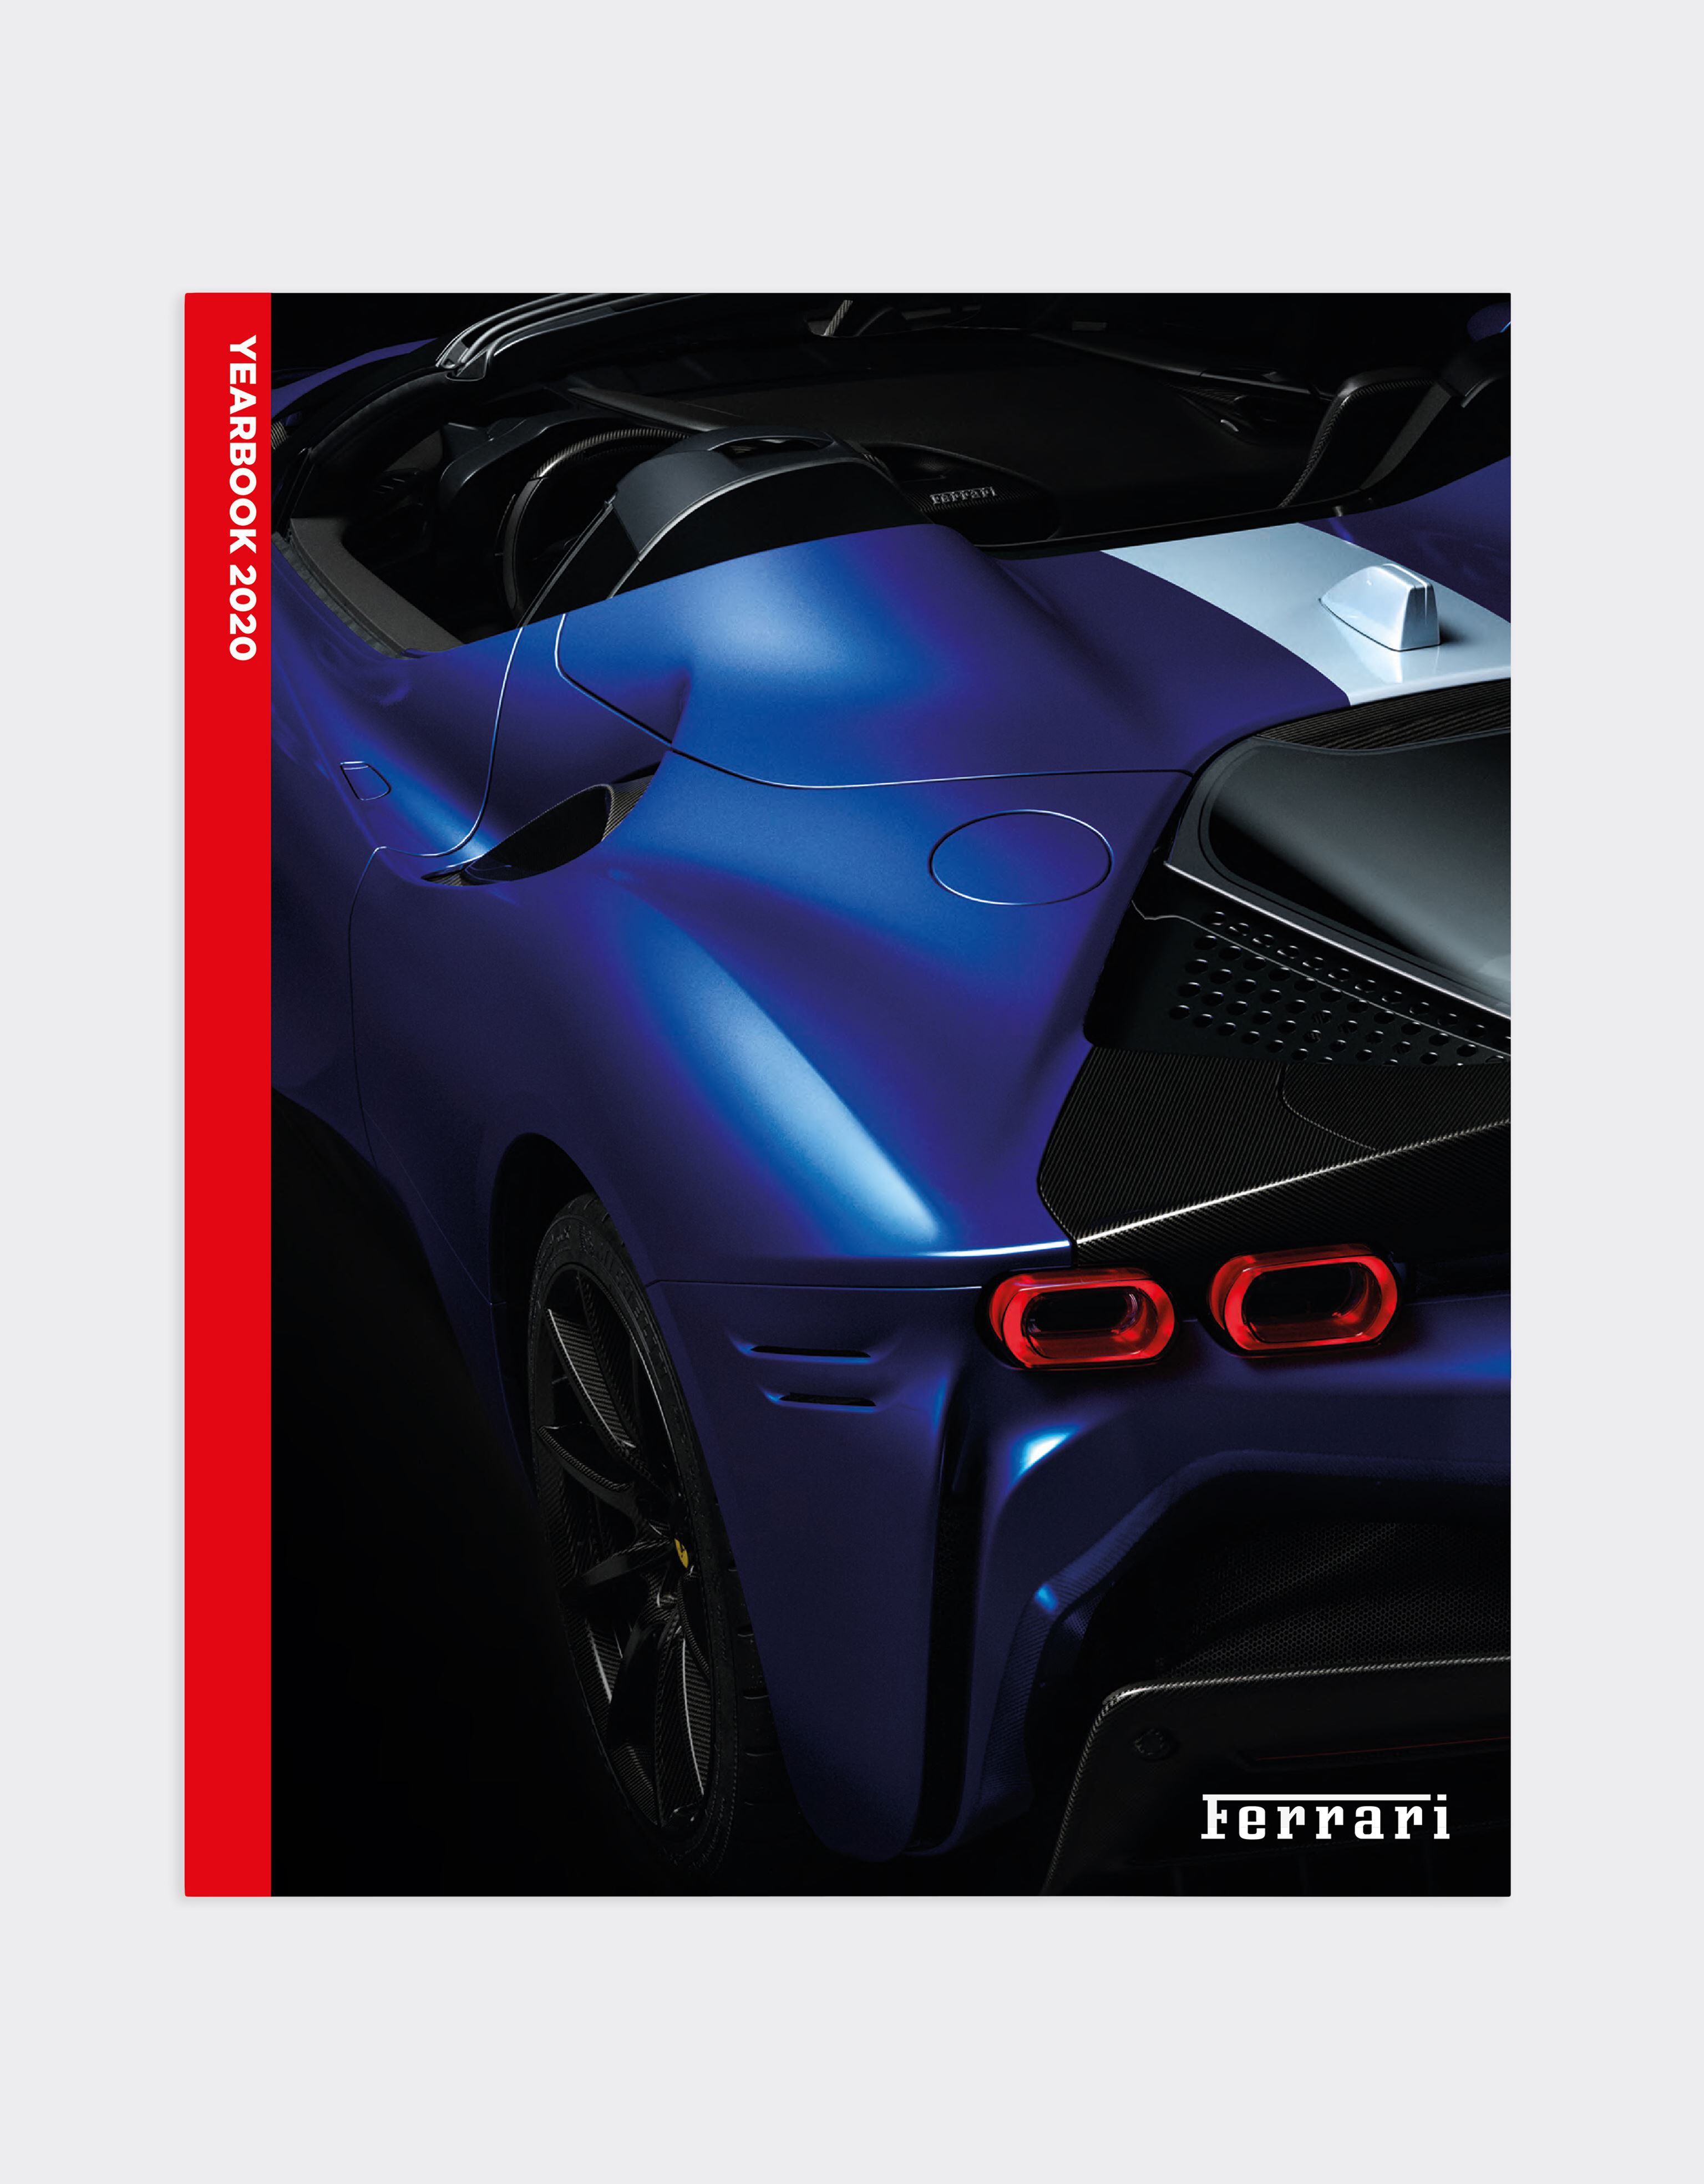 Ferrari The Official Ferrari Magazine Issue 49 - 2020 Yearbook Black 47387f